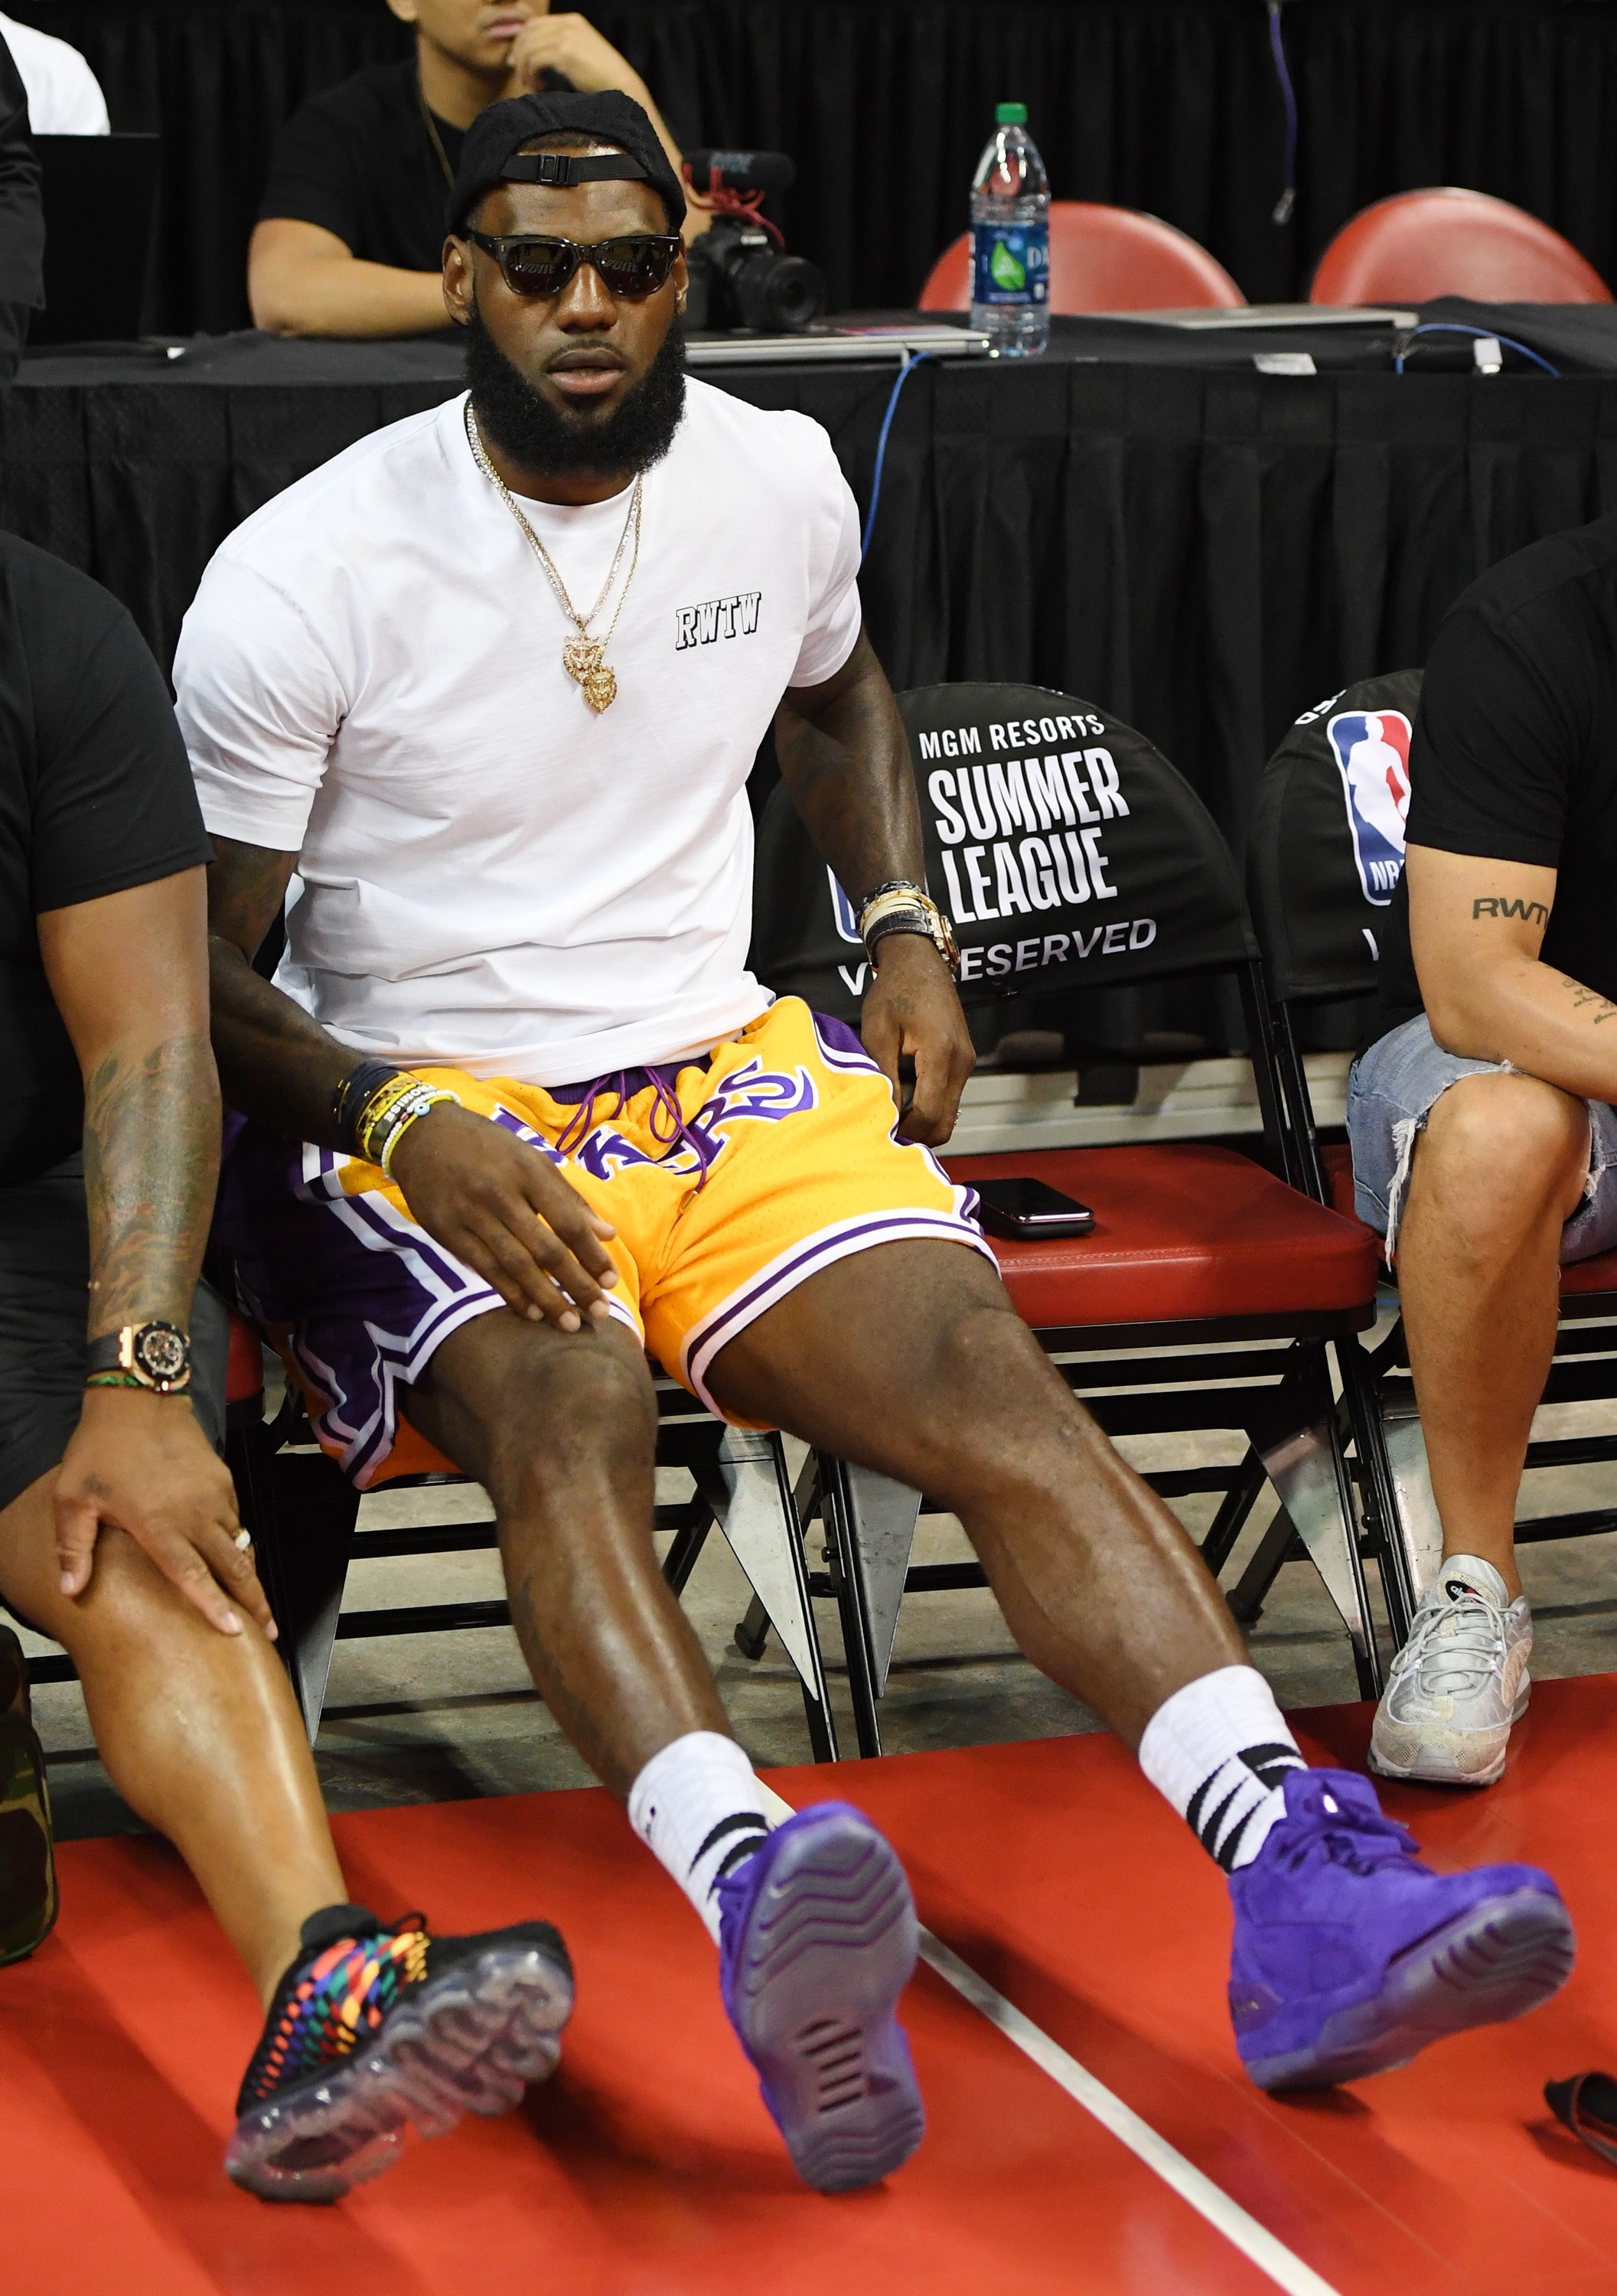 LeBron James usando os shorts feitos por Don C para a NBA. Quer um? Não vai rolar (Foto: Getty Images/Ethan Miller)